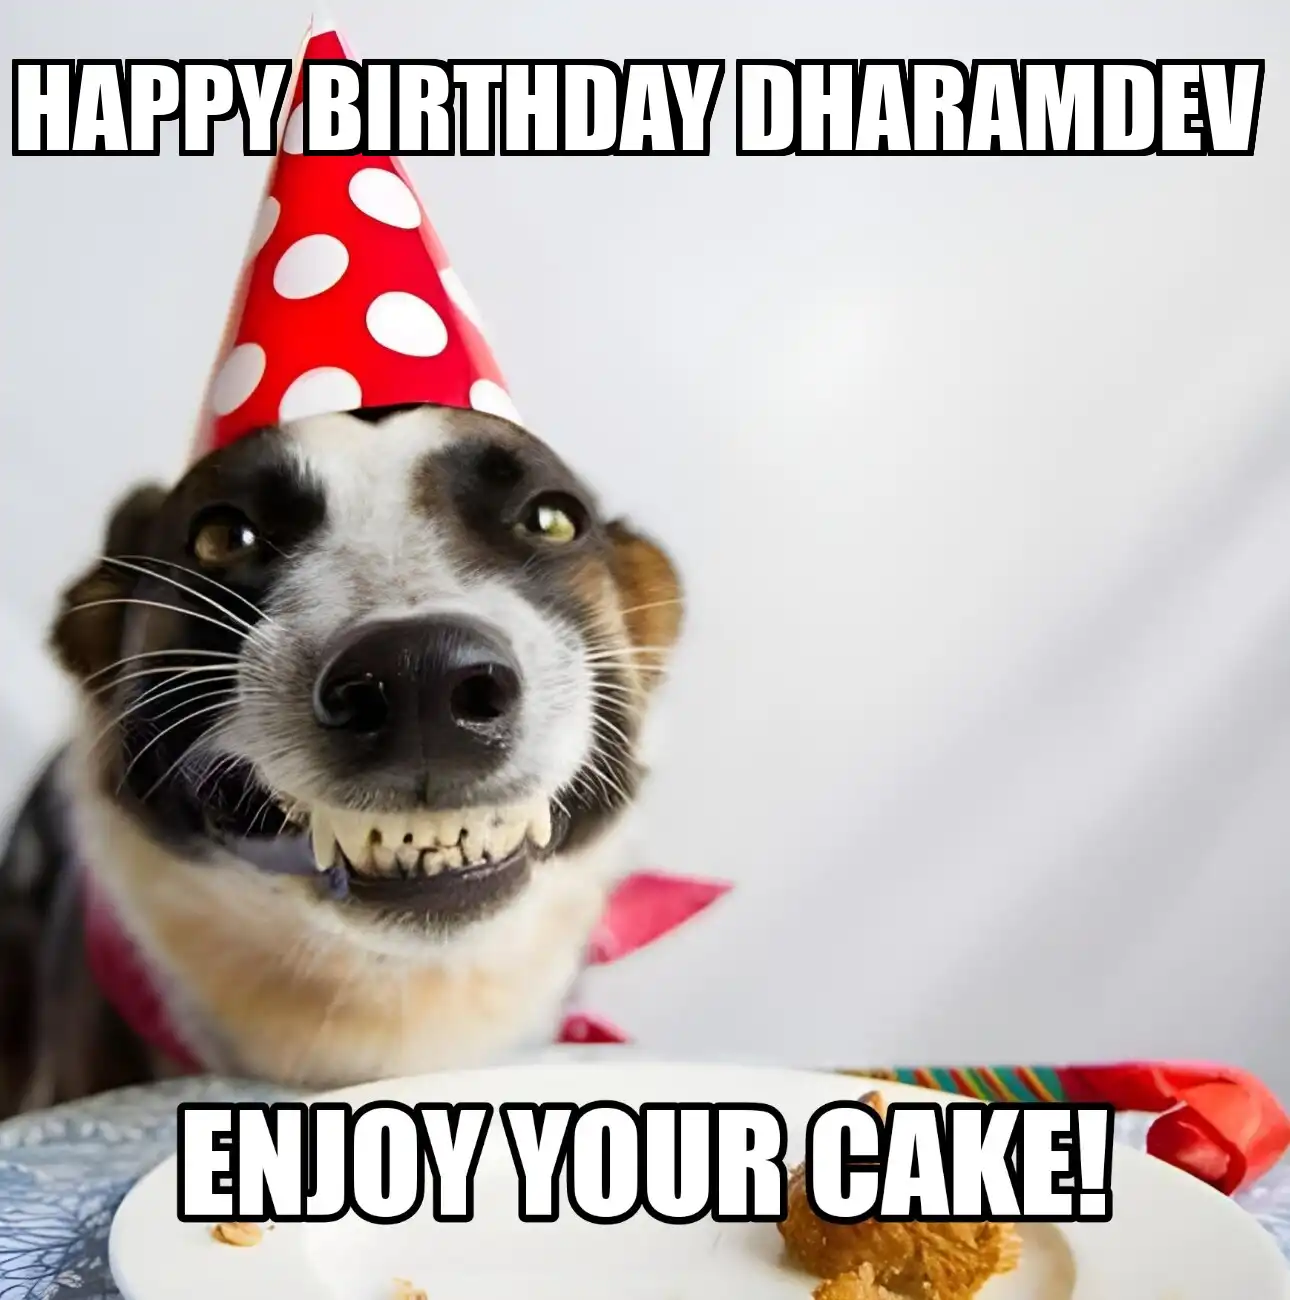 Happy Birthday Dharamdev Enjoy Your Cake Dog Meme